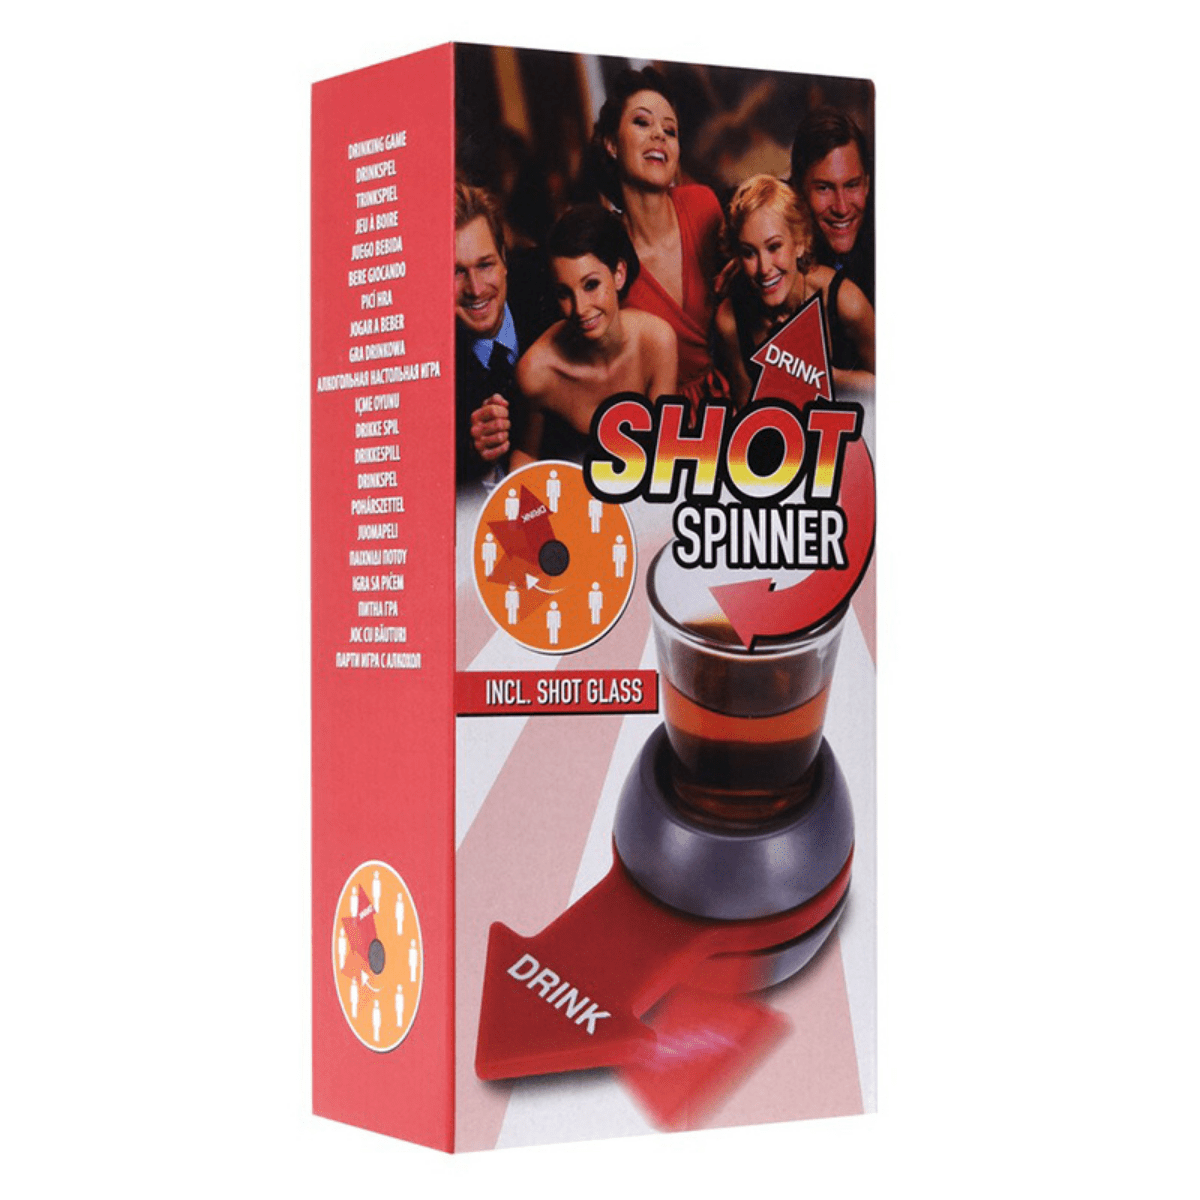 Shot Spinner, Inkl Shotglass